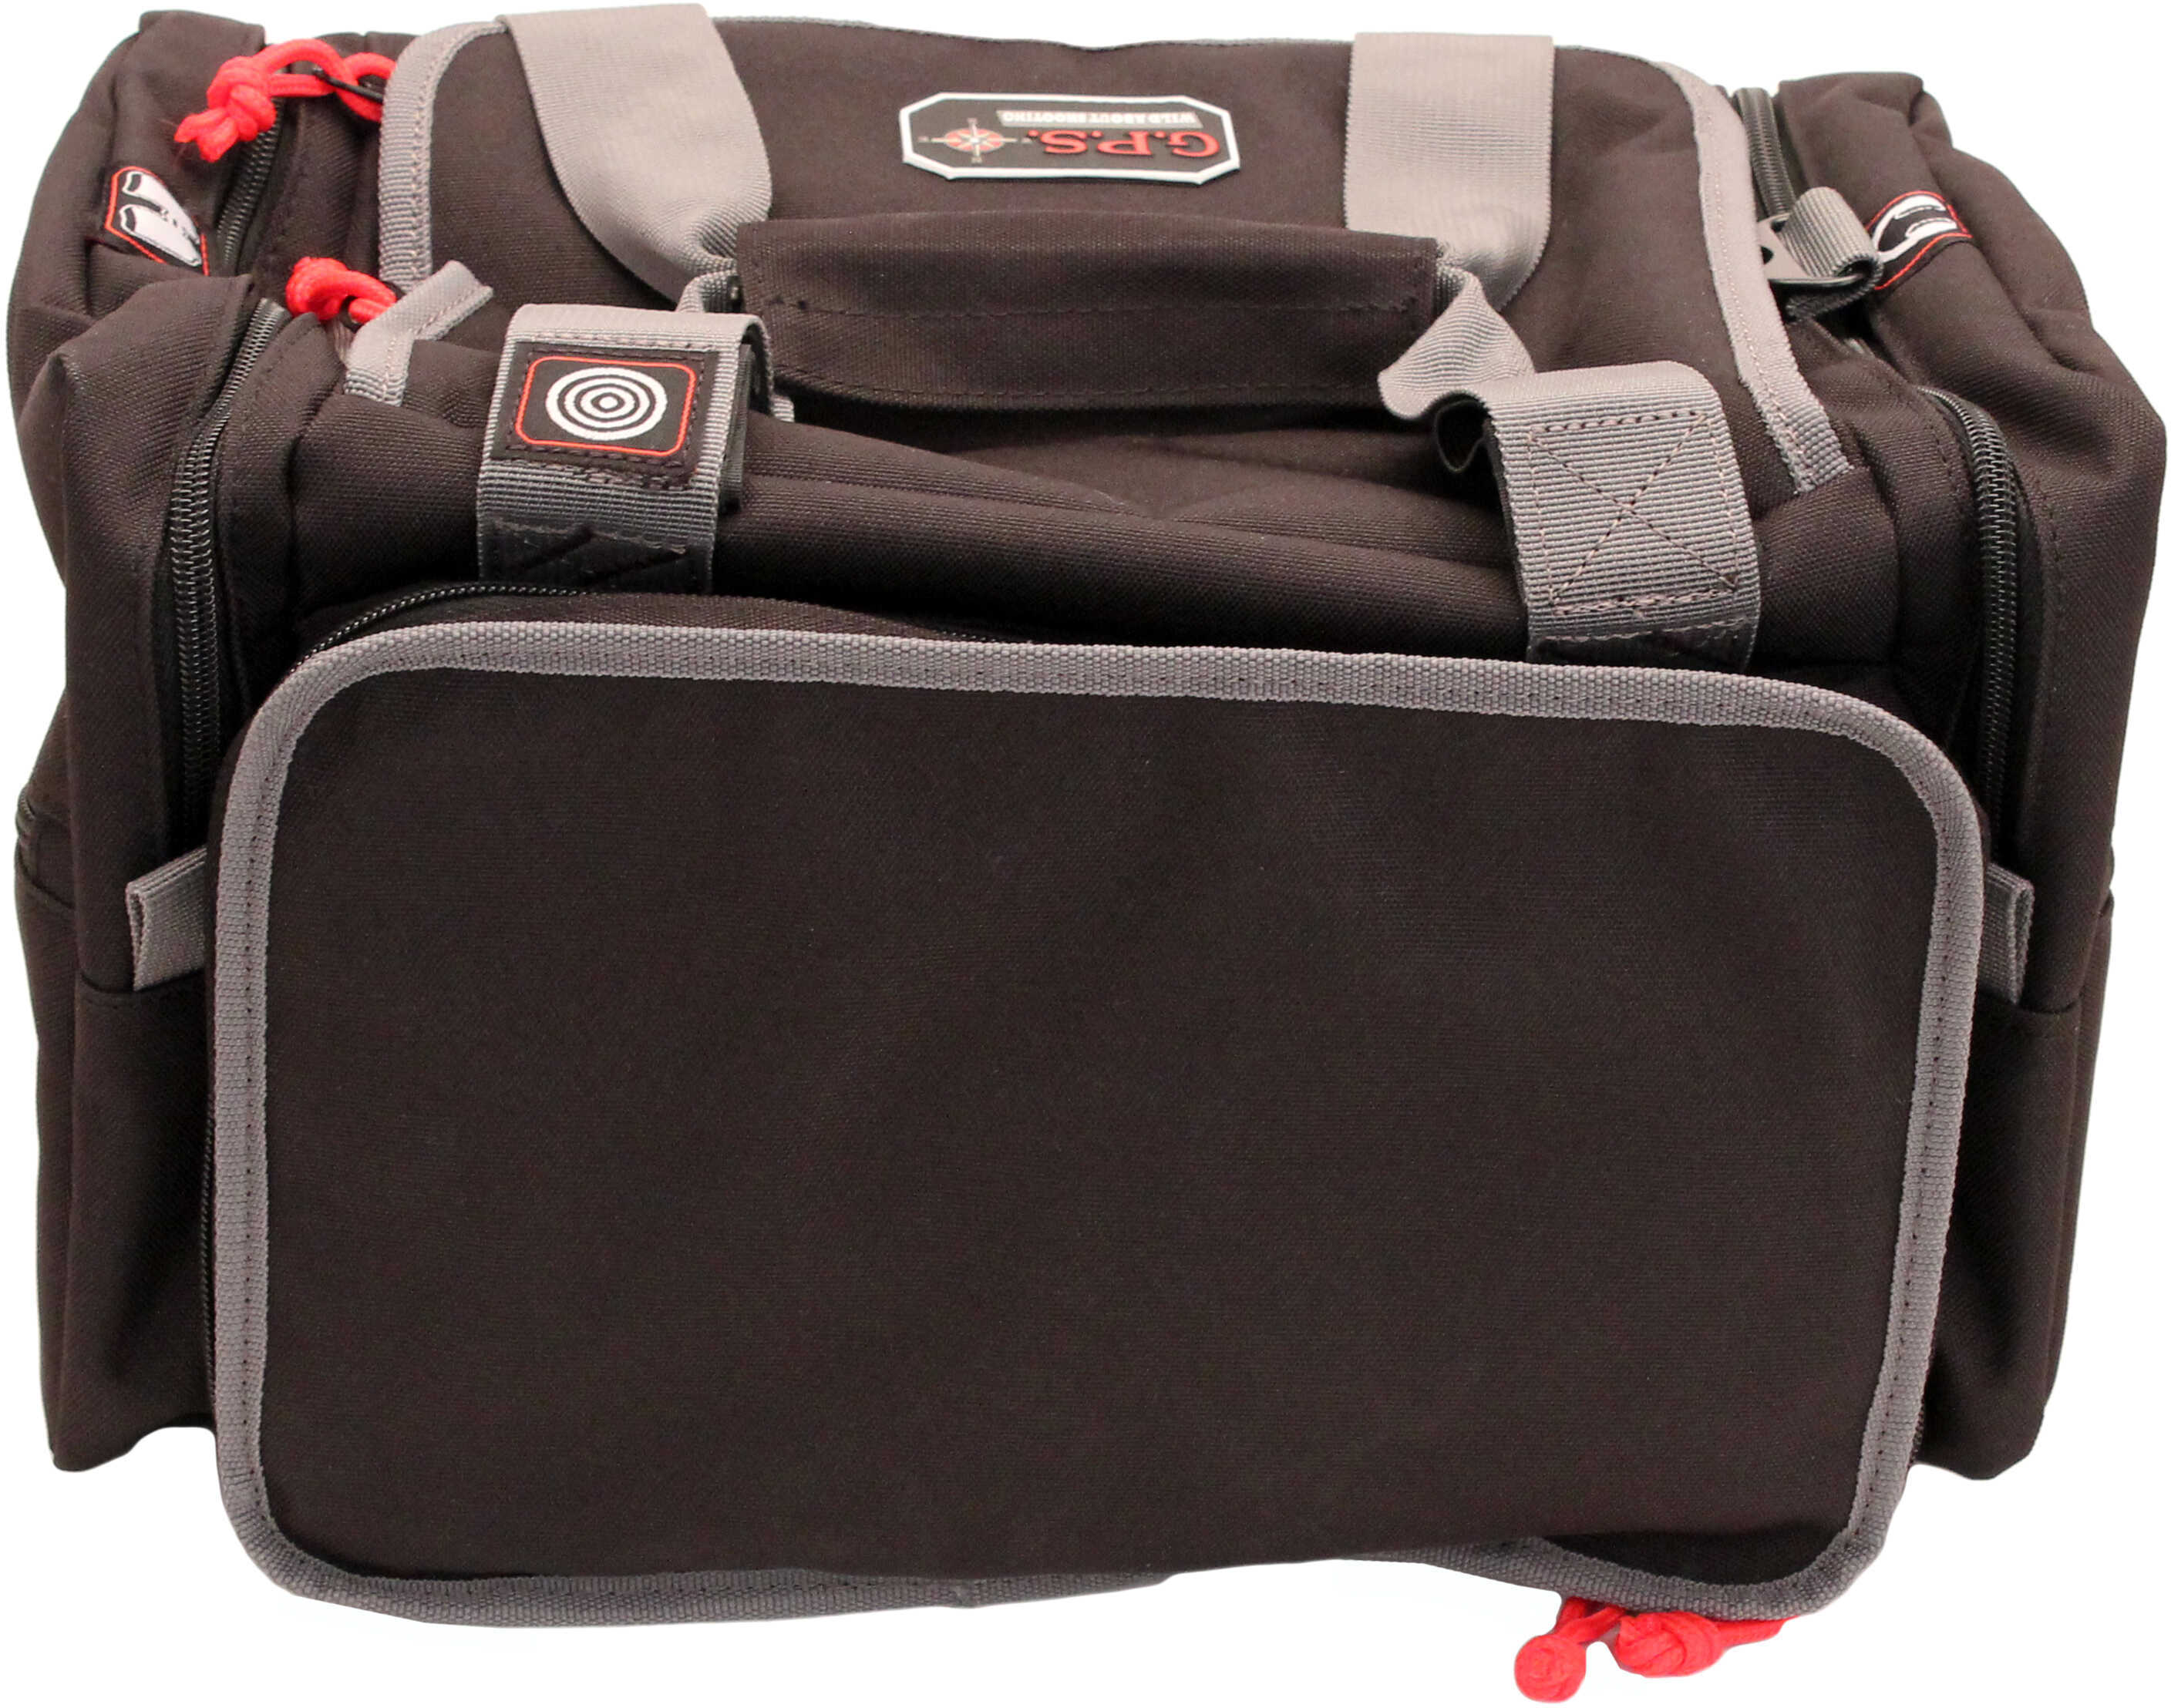 G-Outdoors Medium Range Bag With Lift Ports & 2 Am-img-1